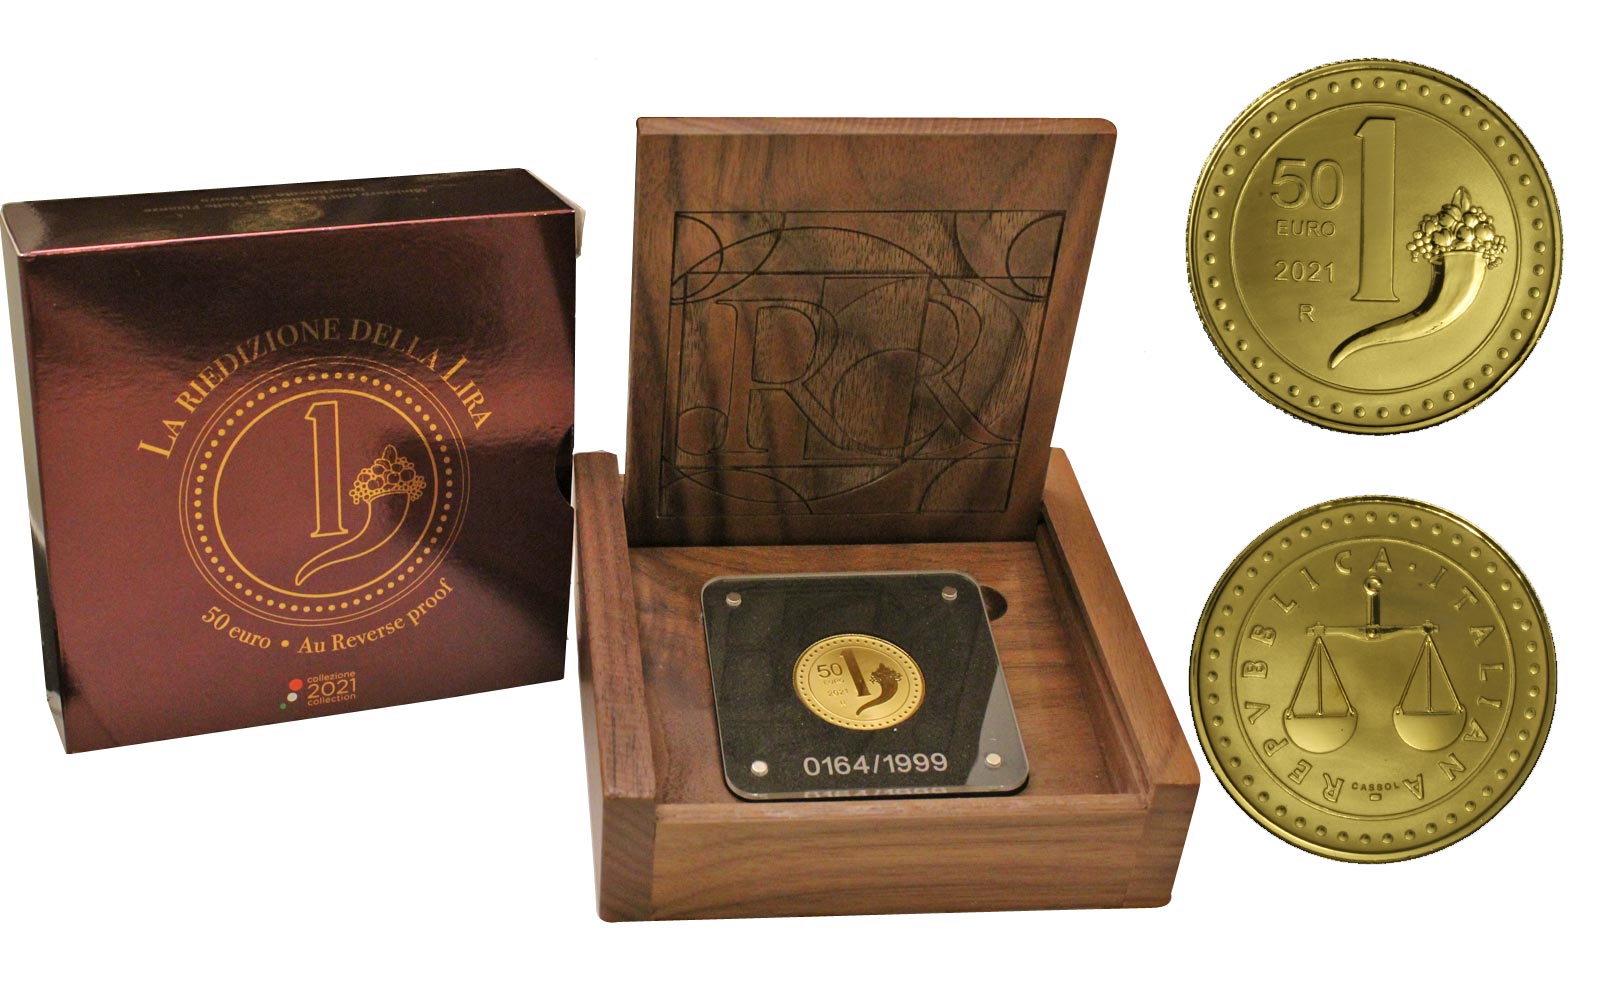 "Riedizione della Lira" - 50 Euro gr. 15,55 in oro 999/000 - Reverse PROOF - Tiratura 1999 pezzi